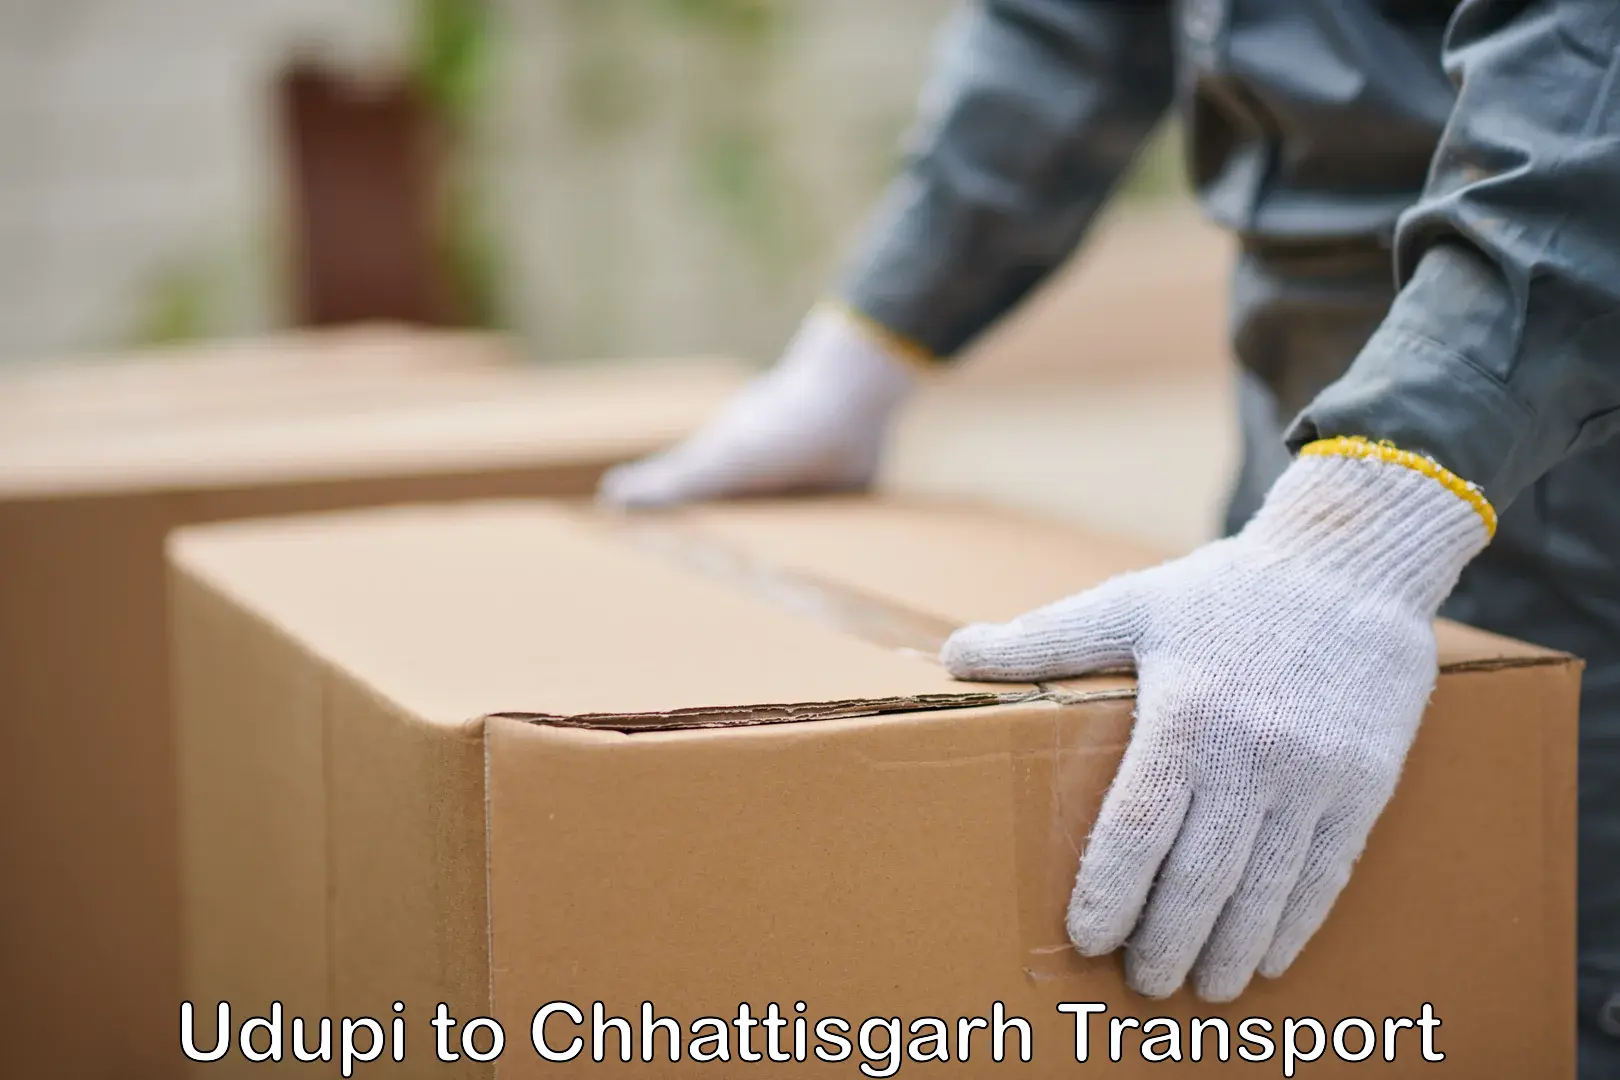 Delivery service Udupi to Tilda